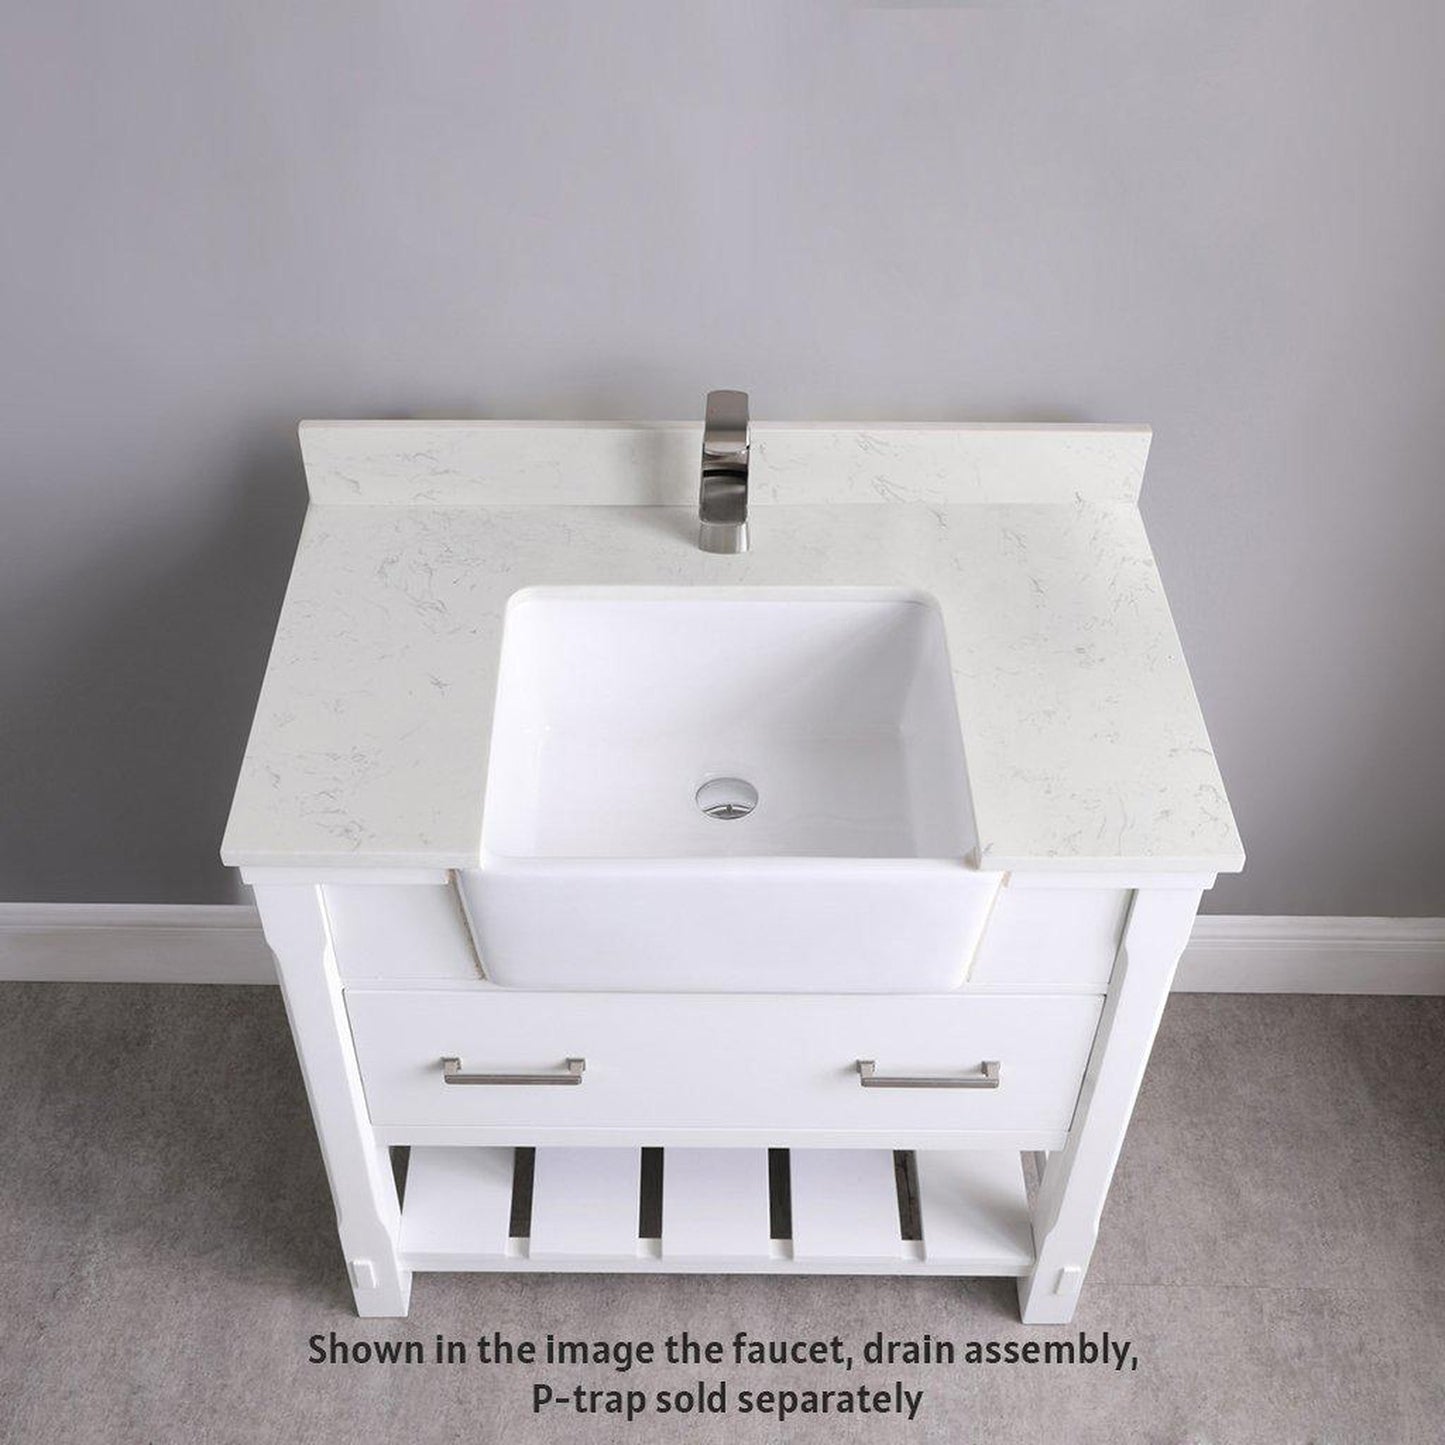 Altair Georgia 36" Single White Freestanding Bathroom Vanity Set With Aosta White Composite Stone Top, Rectangular Farmhouse Sink, Overflow, and Backsplash